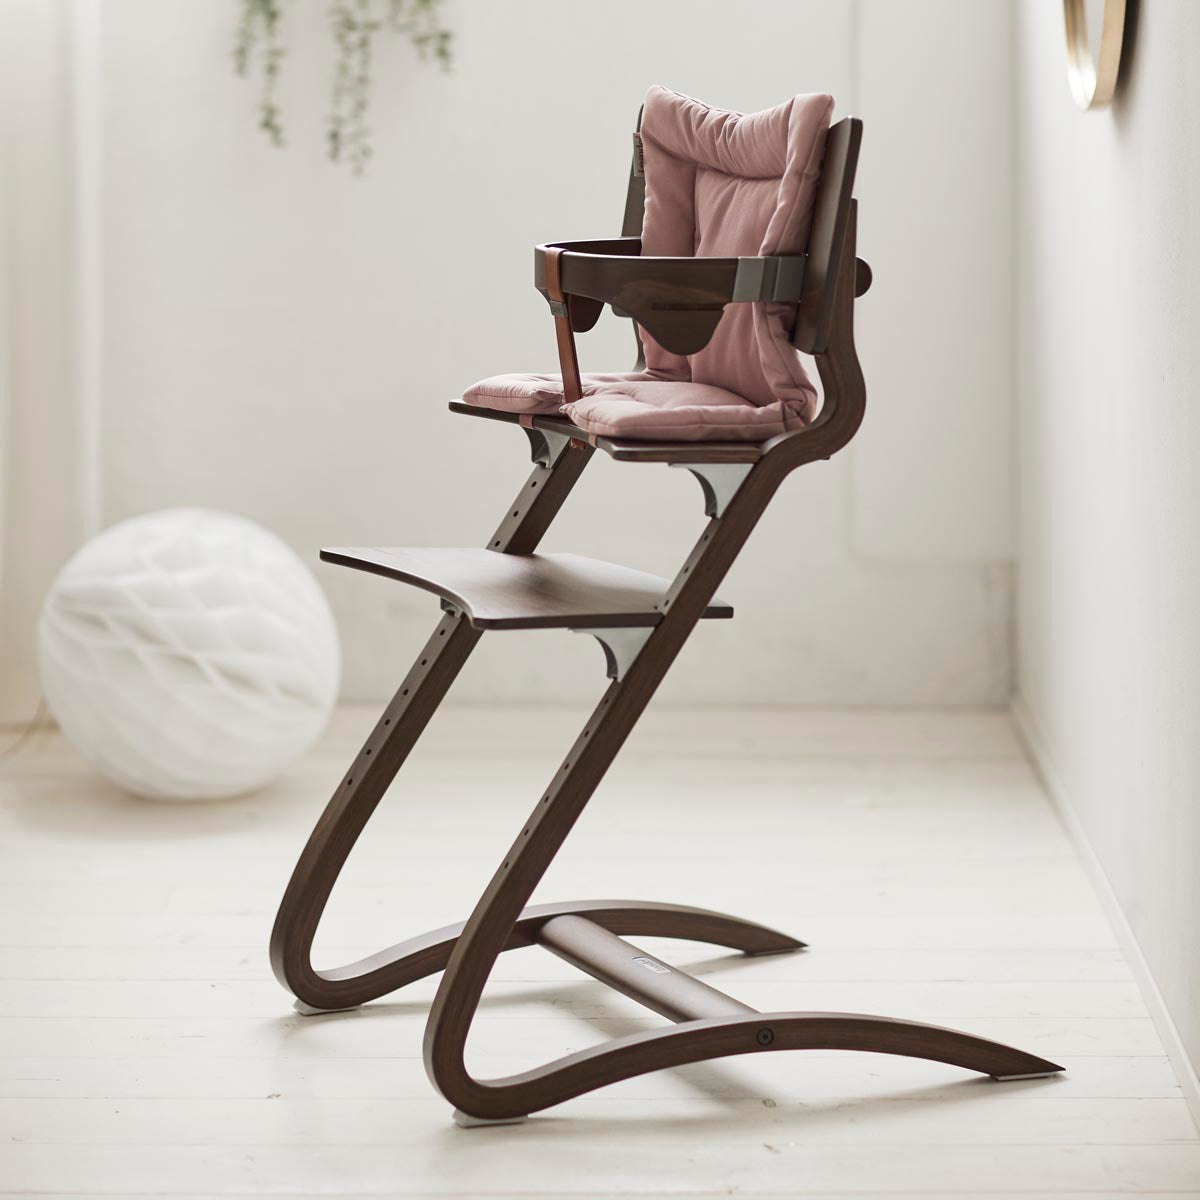 Leander Classic High Chair - Walnut